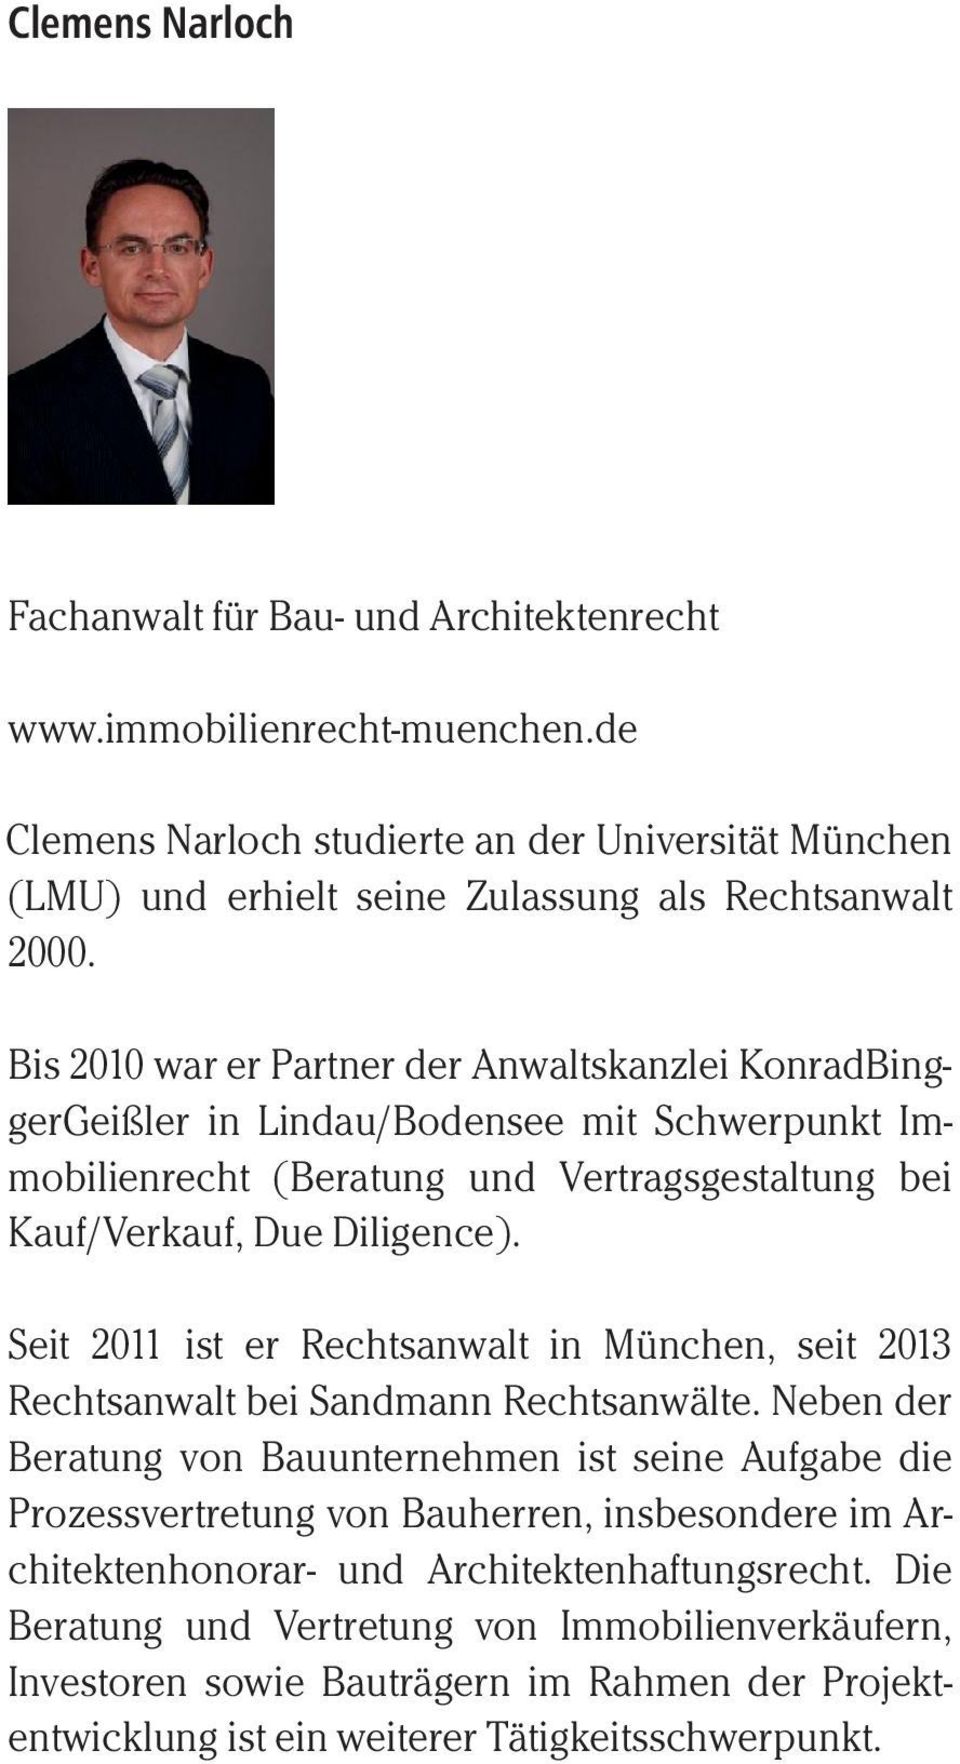 Bis 2010 war er Partner der Anwaltskanzlei KonradBinggerGeißler in Lindau/Bodensee mit Schwerpunkt Immobilienrecht (Beratung und Vertragsgestaltung bei Kauf/Verkauf, Due Diligence).